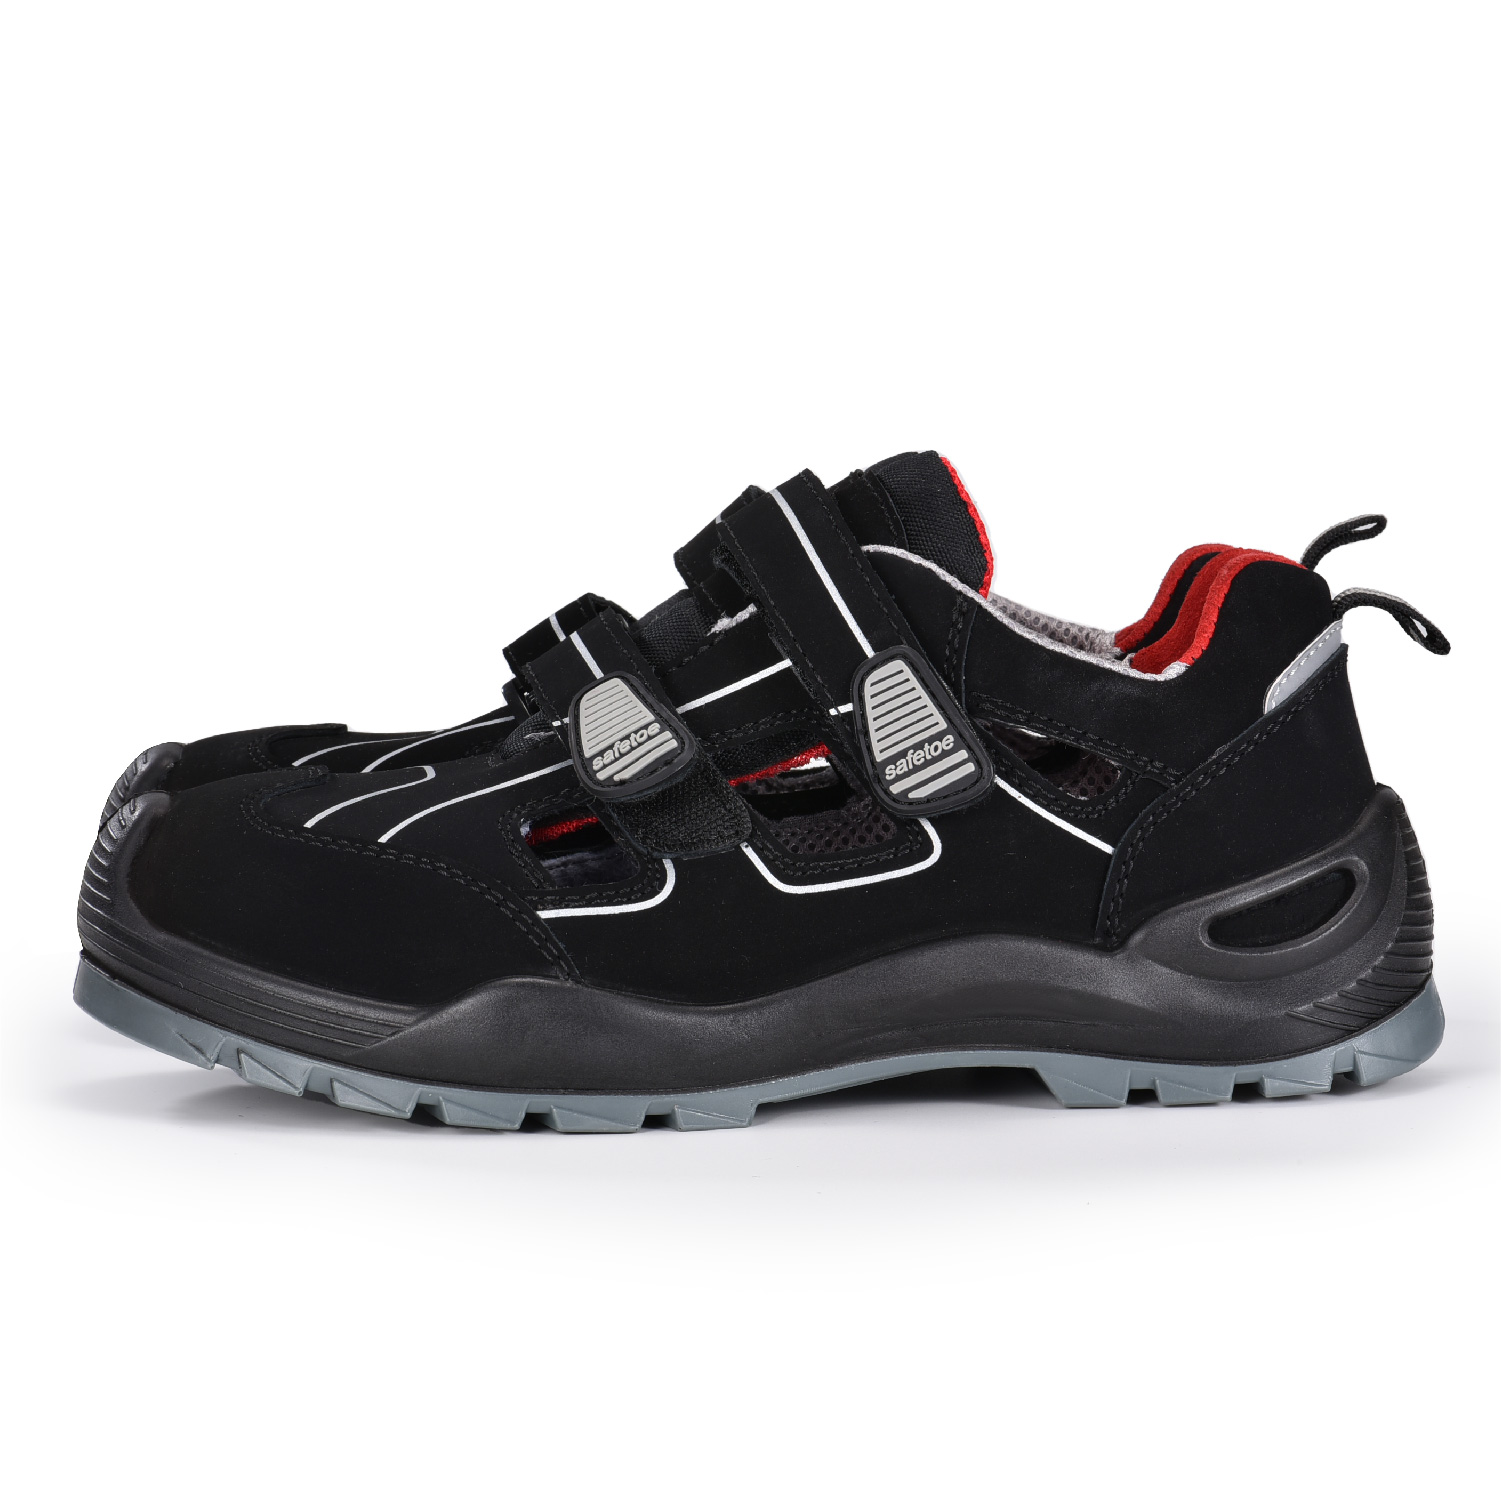 Zapatos de zuecos de seguridad con punta compuesta sin metal transpirables de verano L-7518